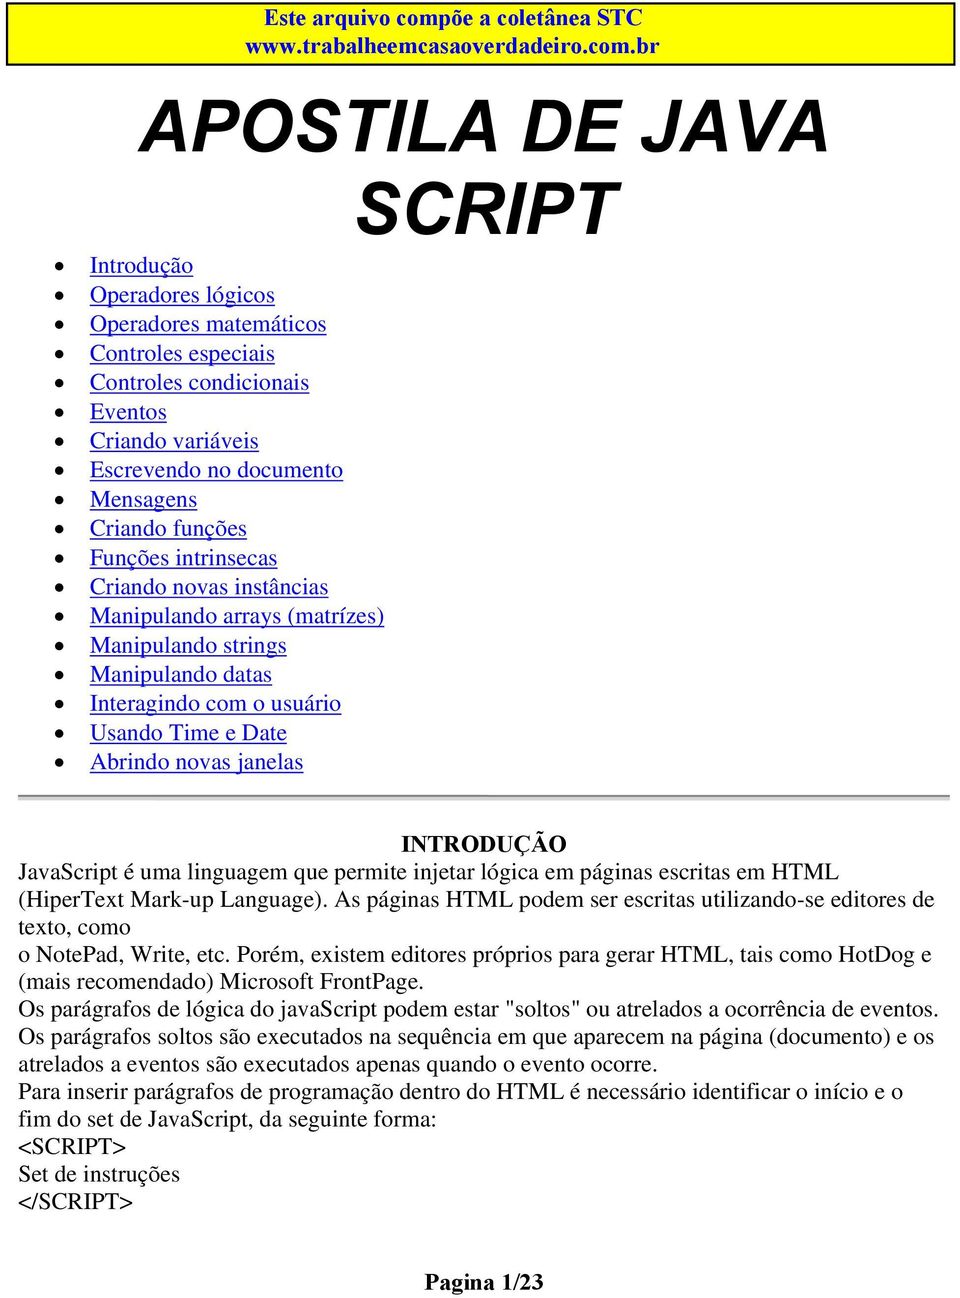 JavaScript é uma linguagem que permite injetar lógica em páginas escritas em HTML (HiperText Mark-up Language).